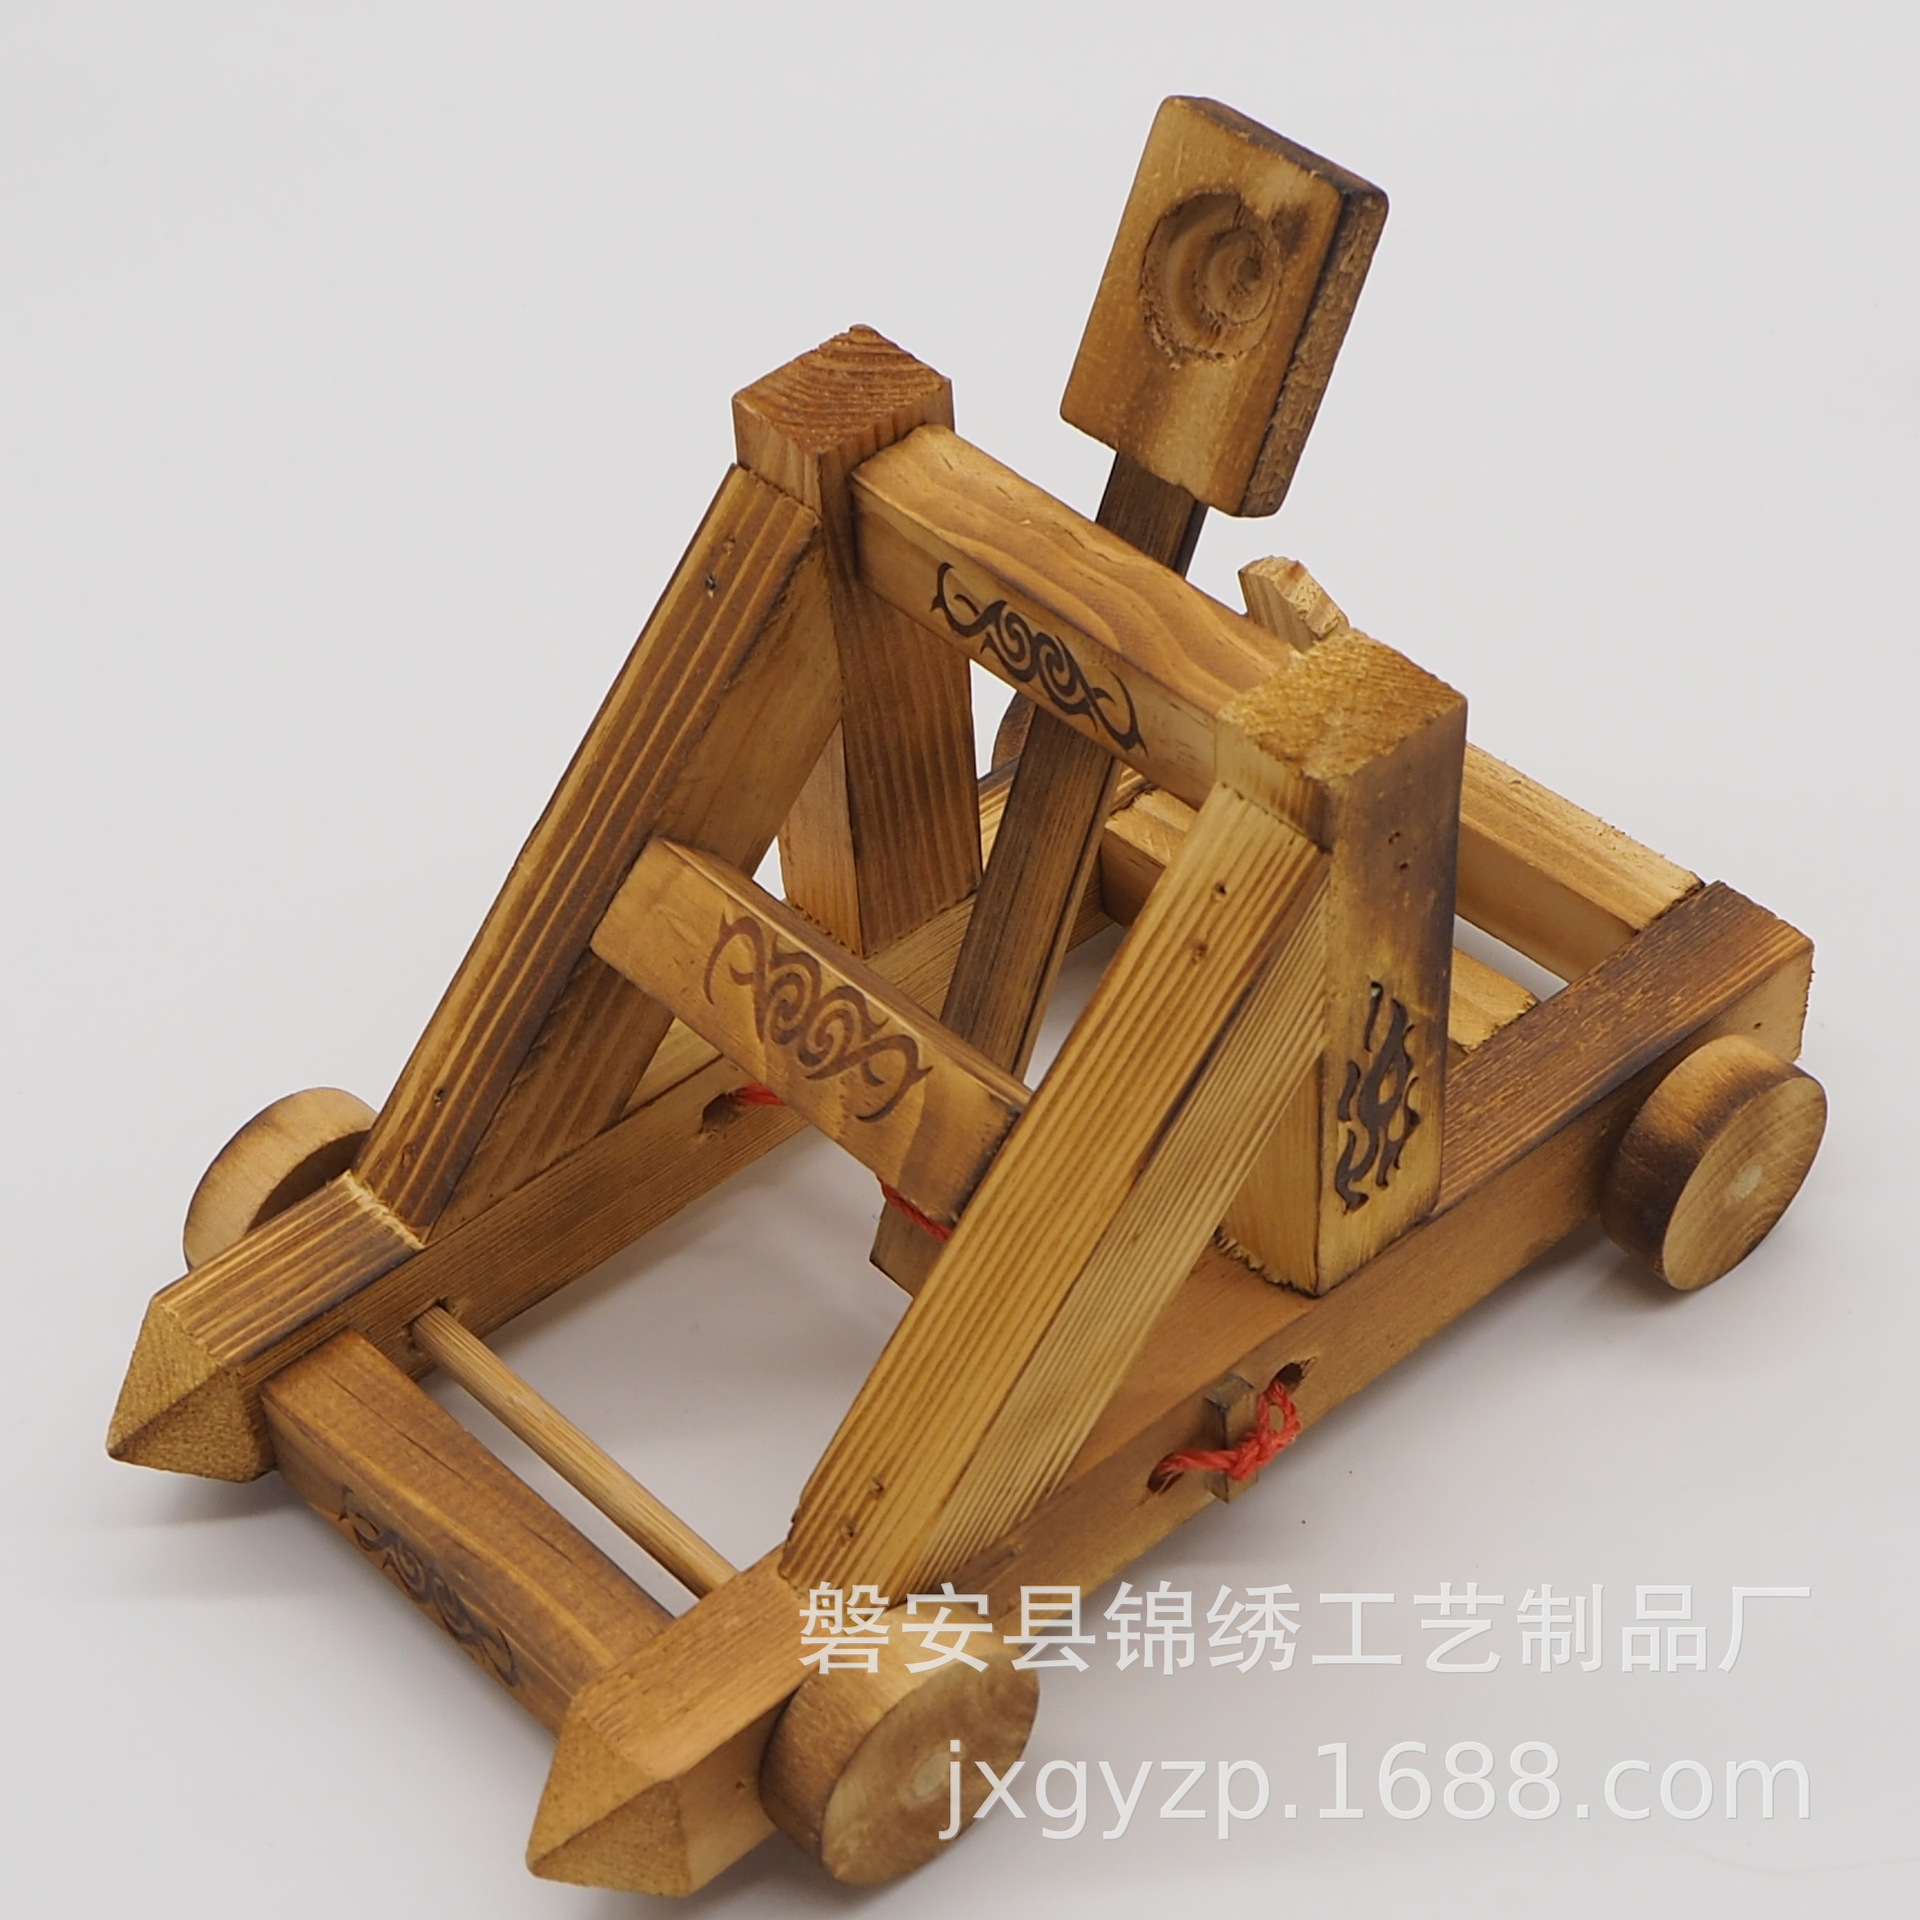 厂家直销 投石车模型 木制投石车 古代投石机 木制军事玩具模型